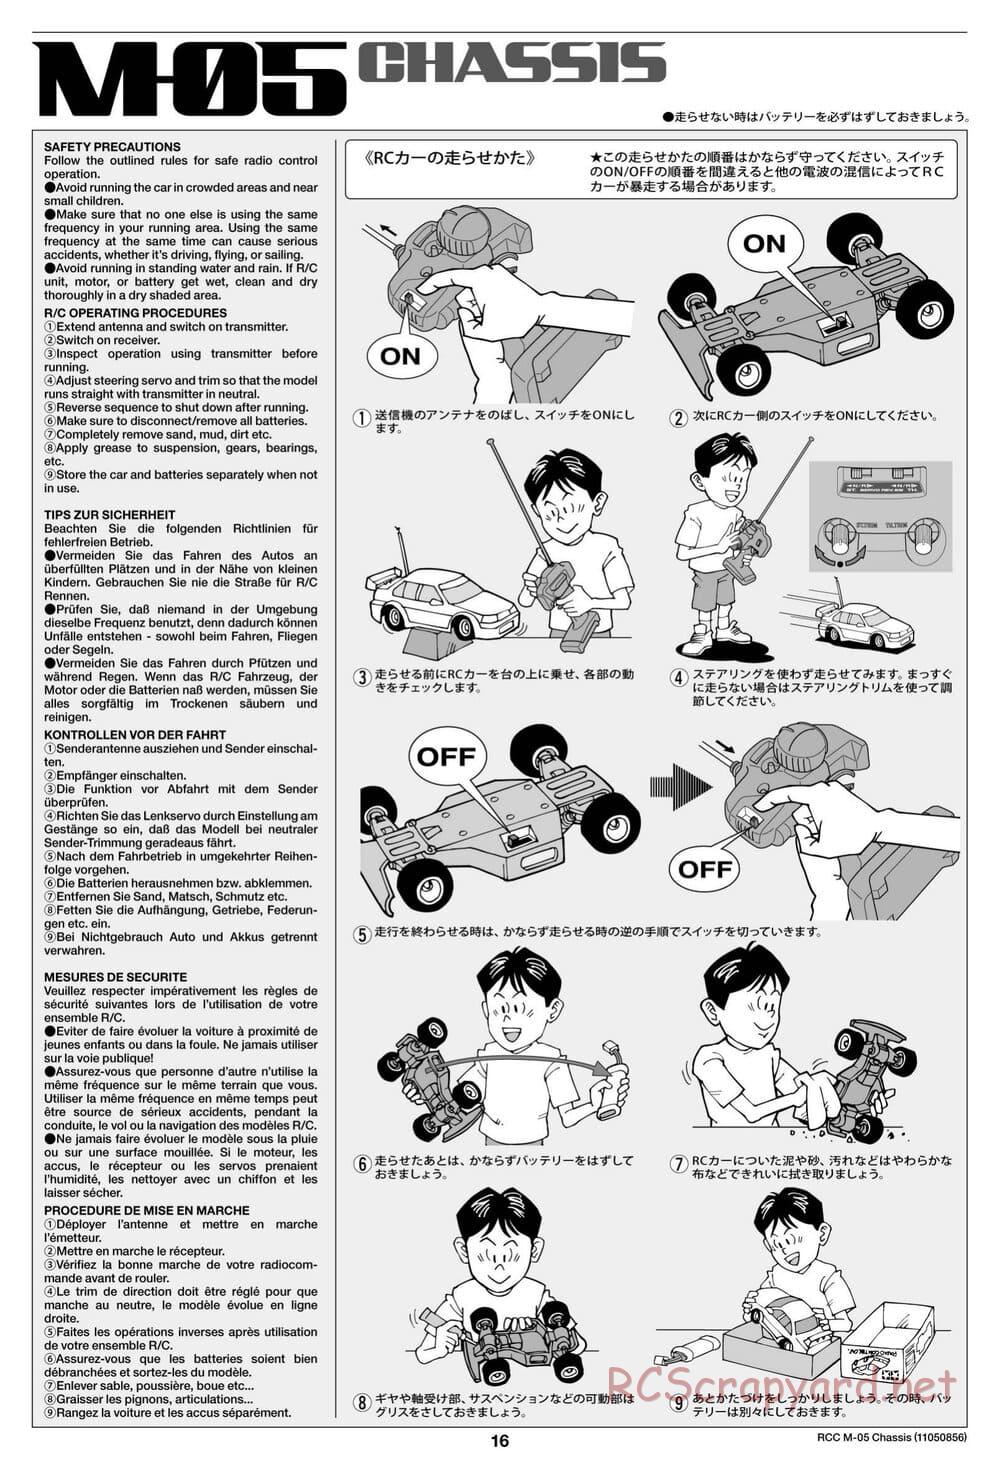 Tamiya - M-05 Chassis - Manual - Page 16